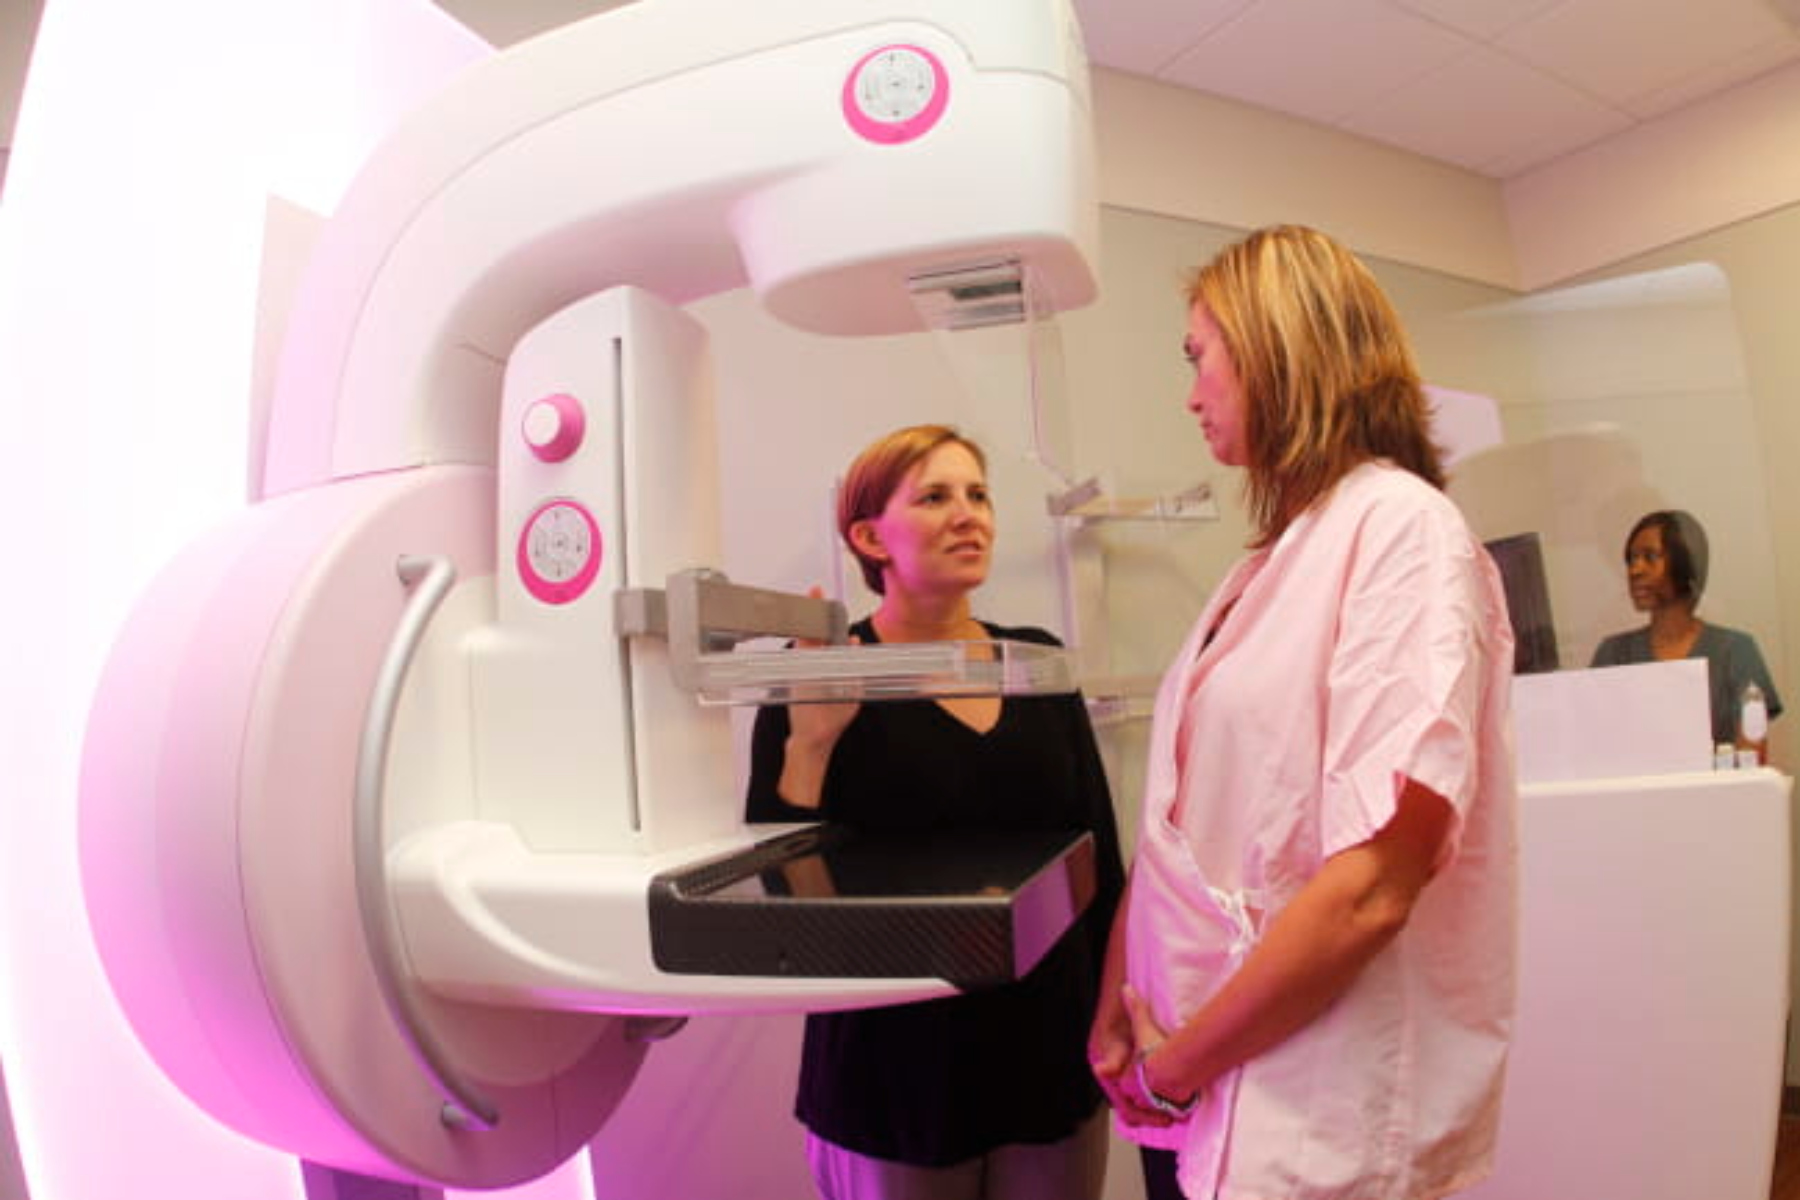 Μαστογραφία: Νέα τεχνολογία βοηθάει στην πρόληψη του καρκίνου του μαστού